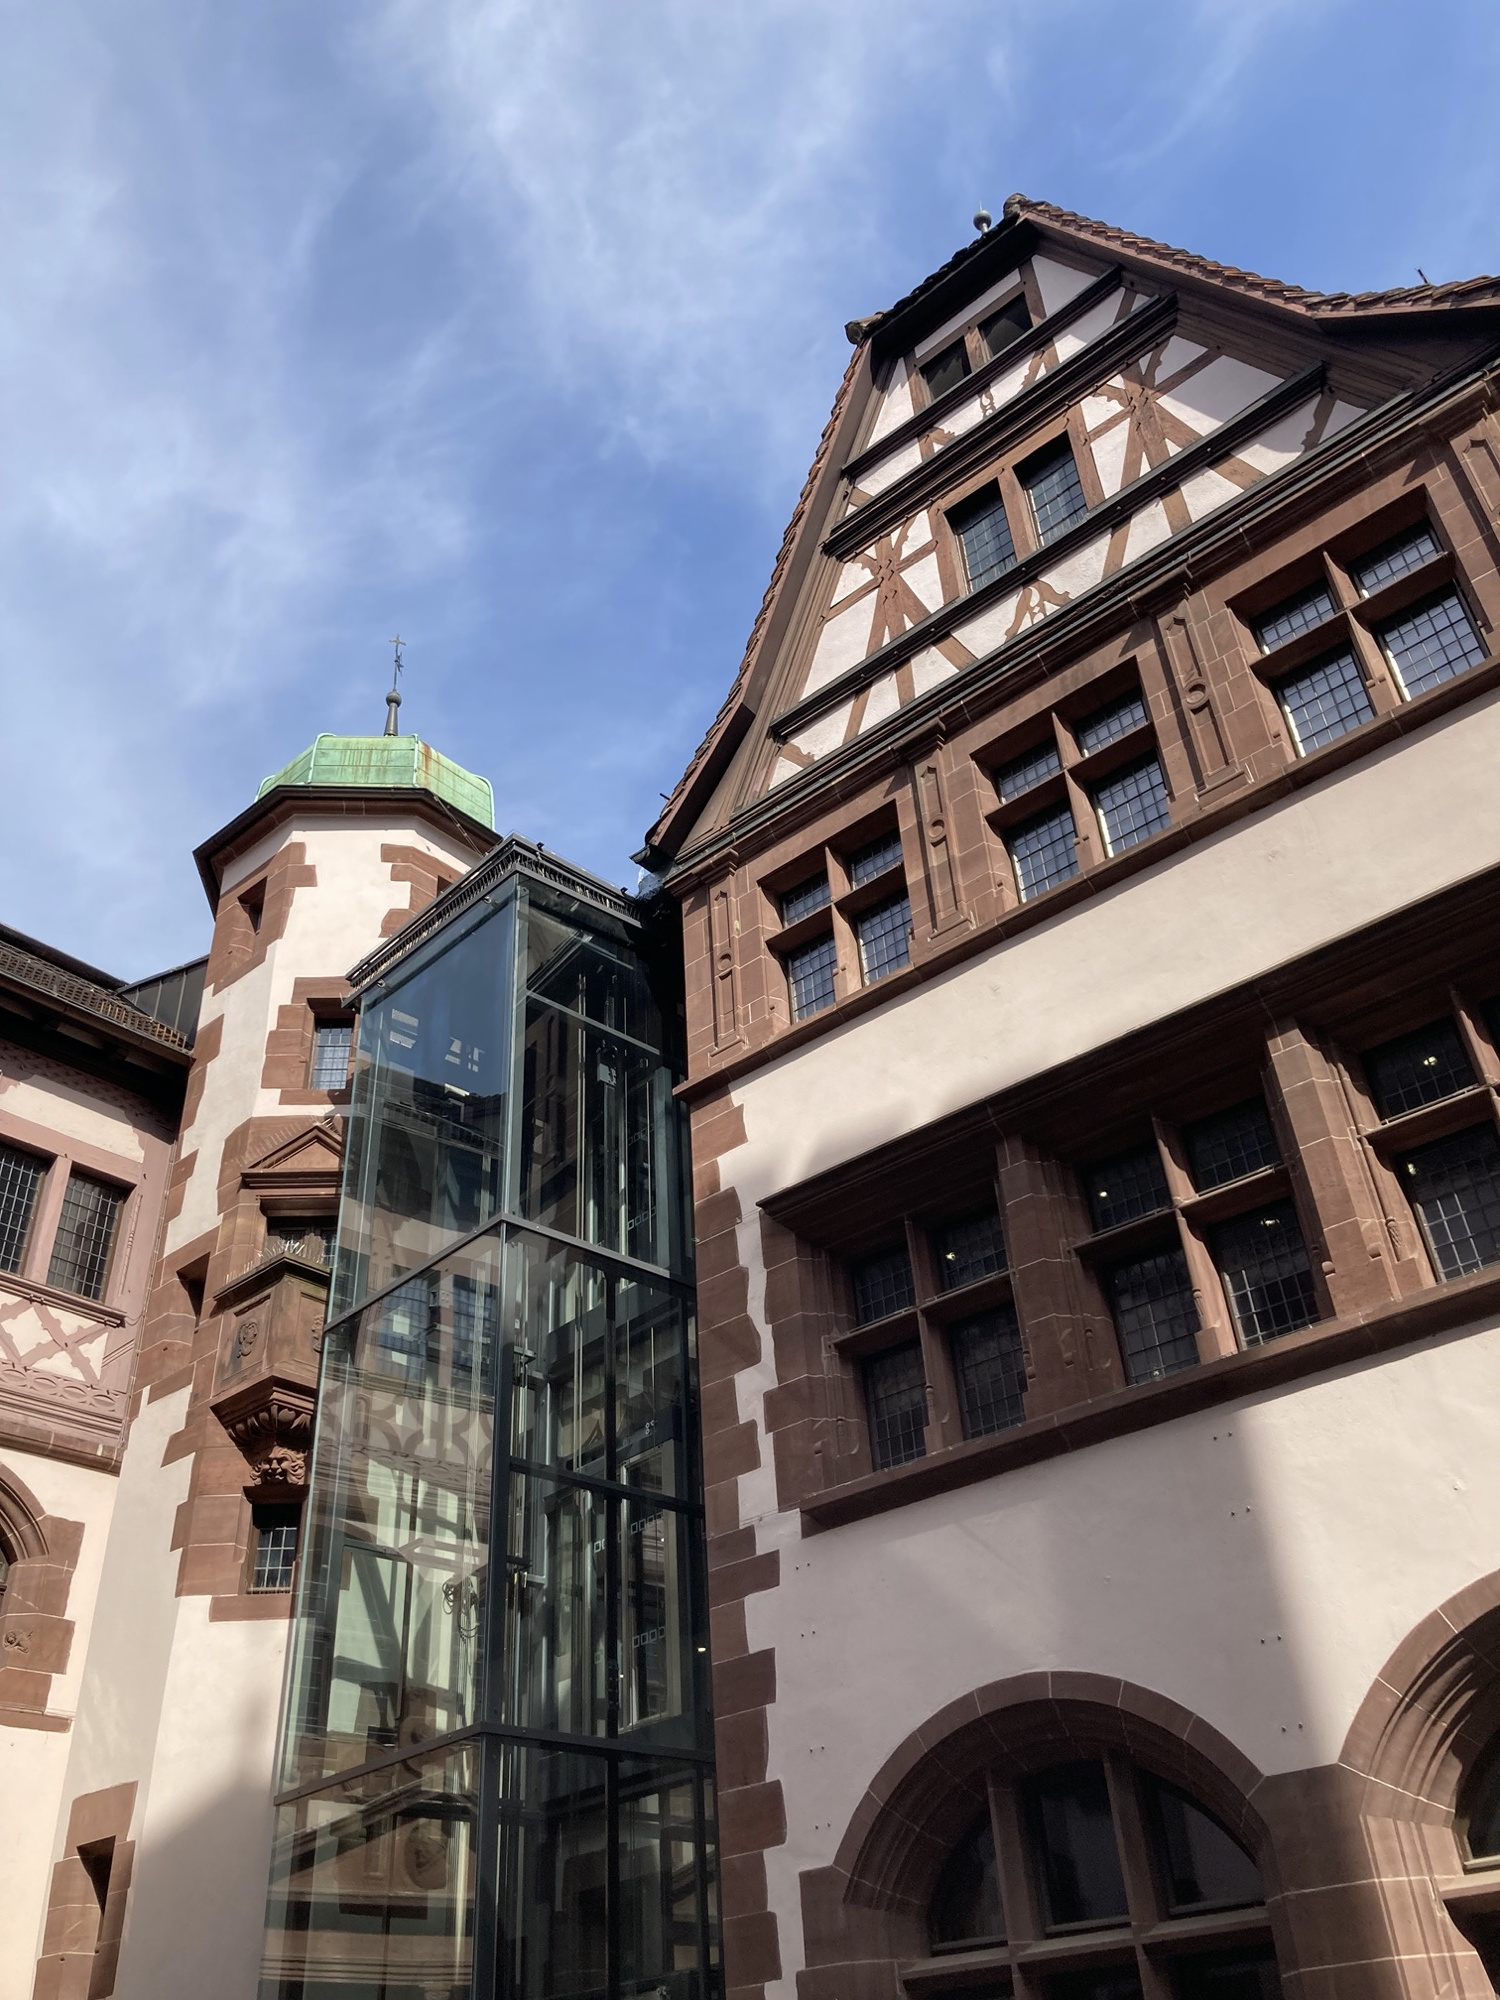 Innenhof des Neuen Rathauses, neben altmodischen Ziegelfassaden und Fachwerkdach ist ein gläserner Außenlift angebaut